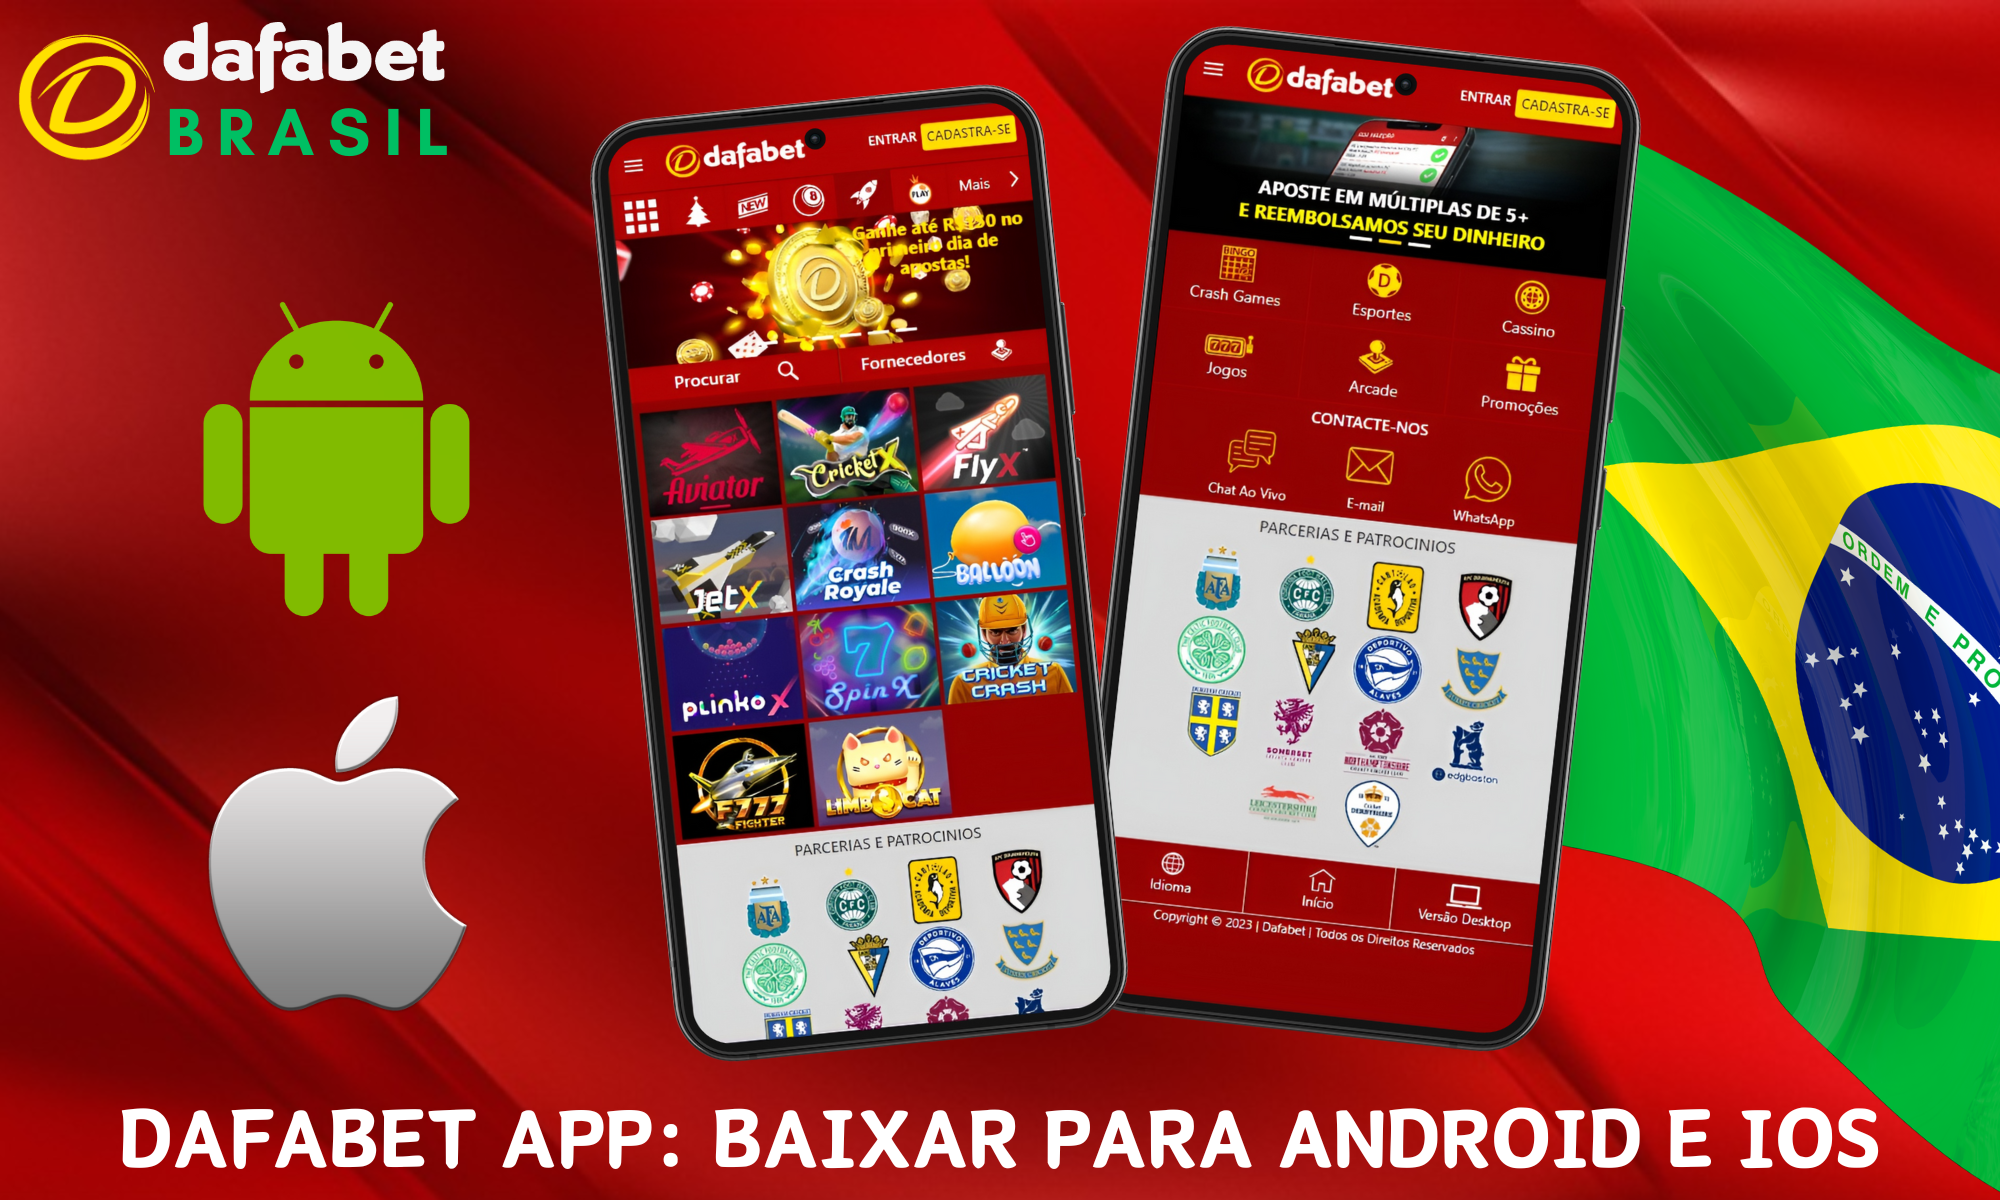 Instruções sobre como fazer o download do aplicativo Dafabet para Android